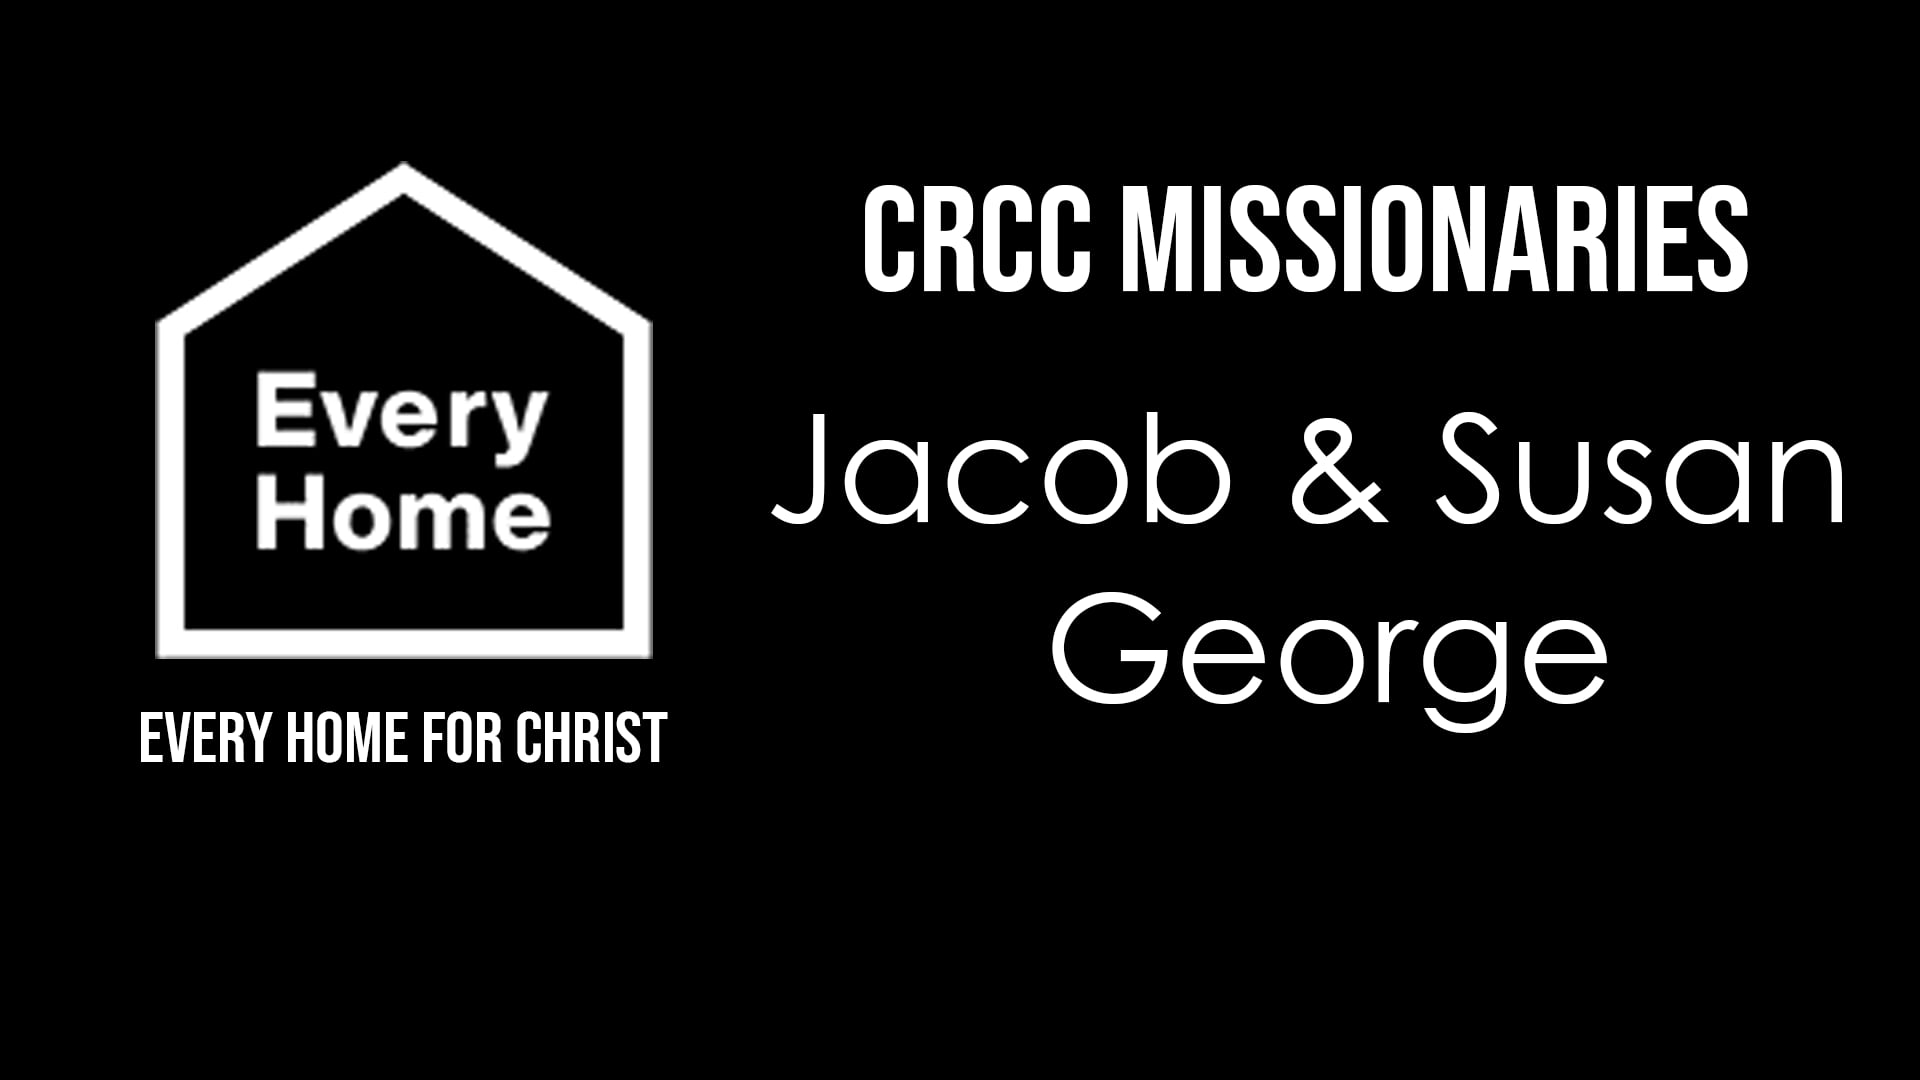 8/29/21 - FOCUS ON MISSIONS - Jacob George